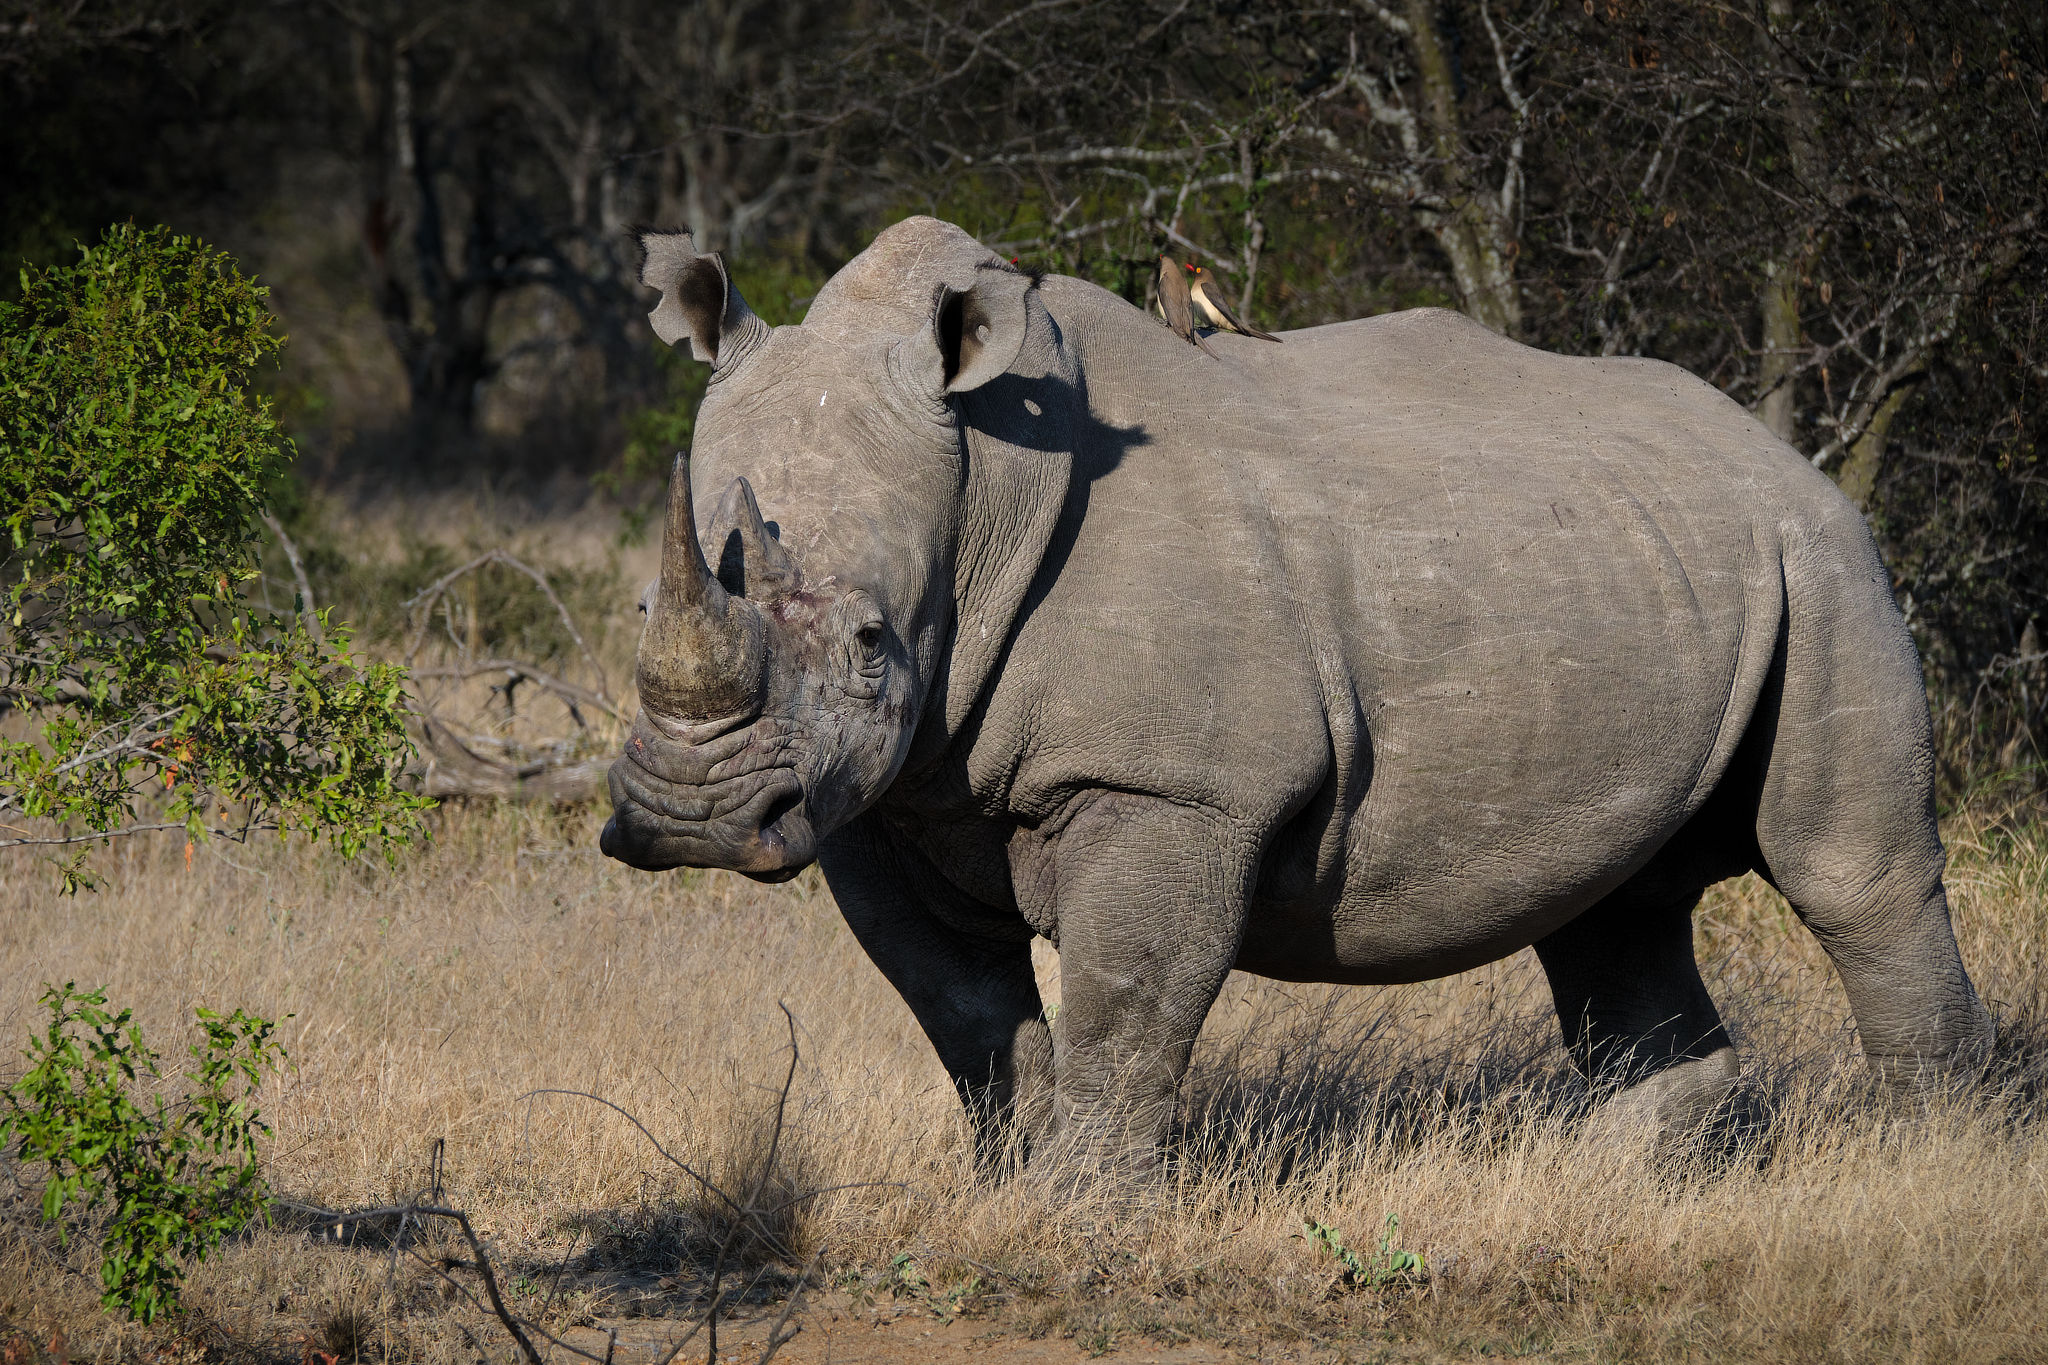 a rhino walking in a safari